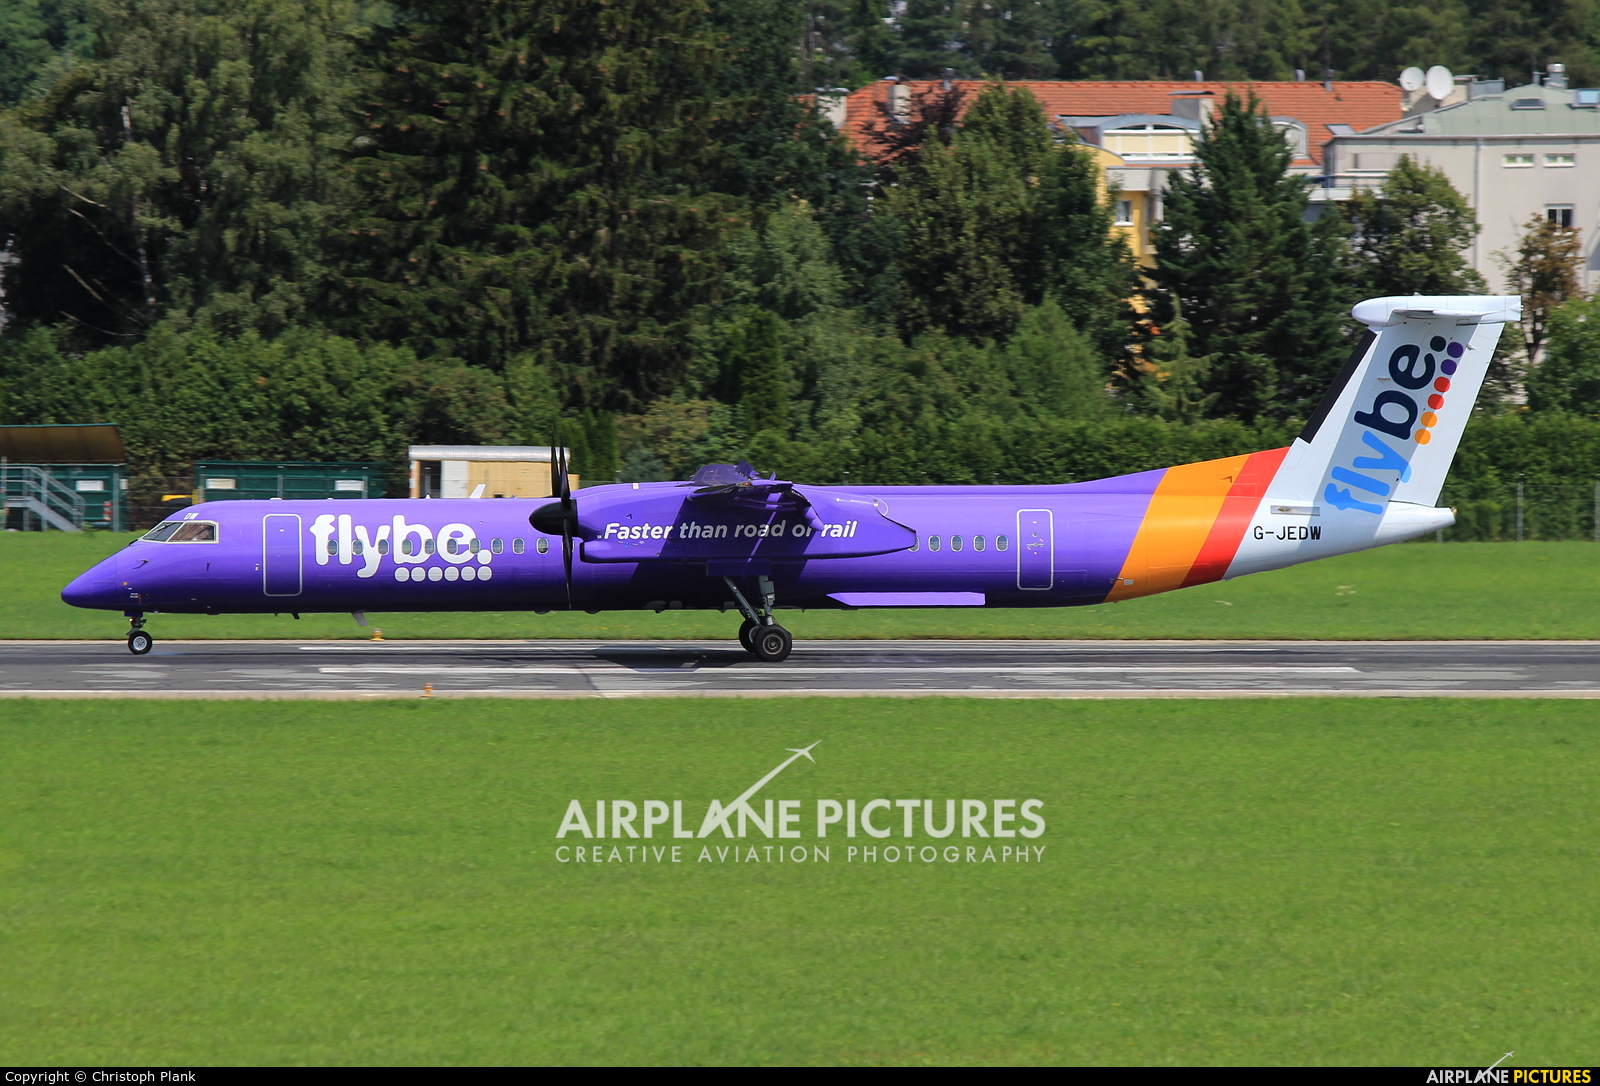 Flybe G-JEDW aircraft at Innsbruck